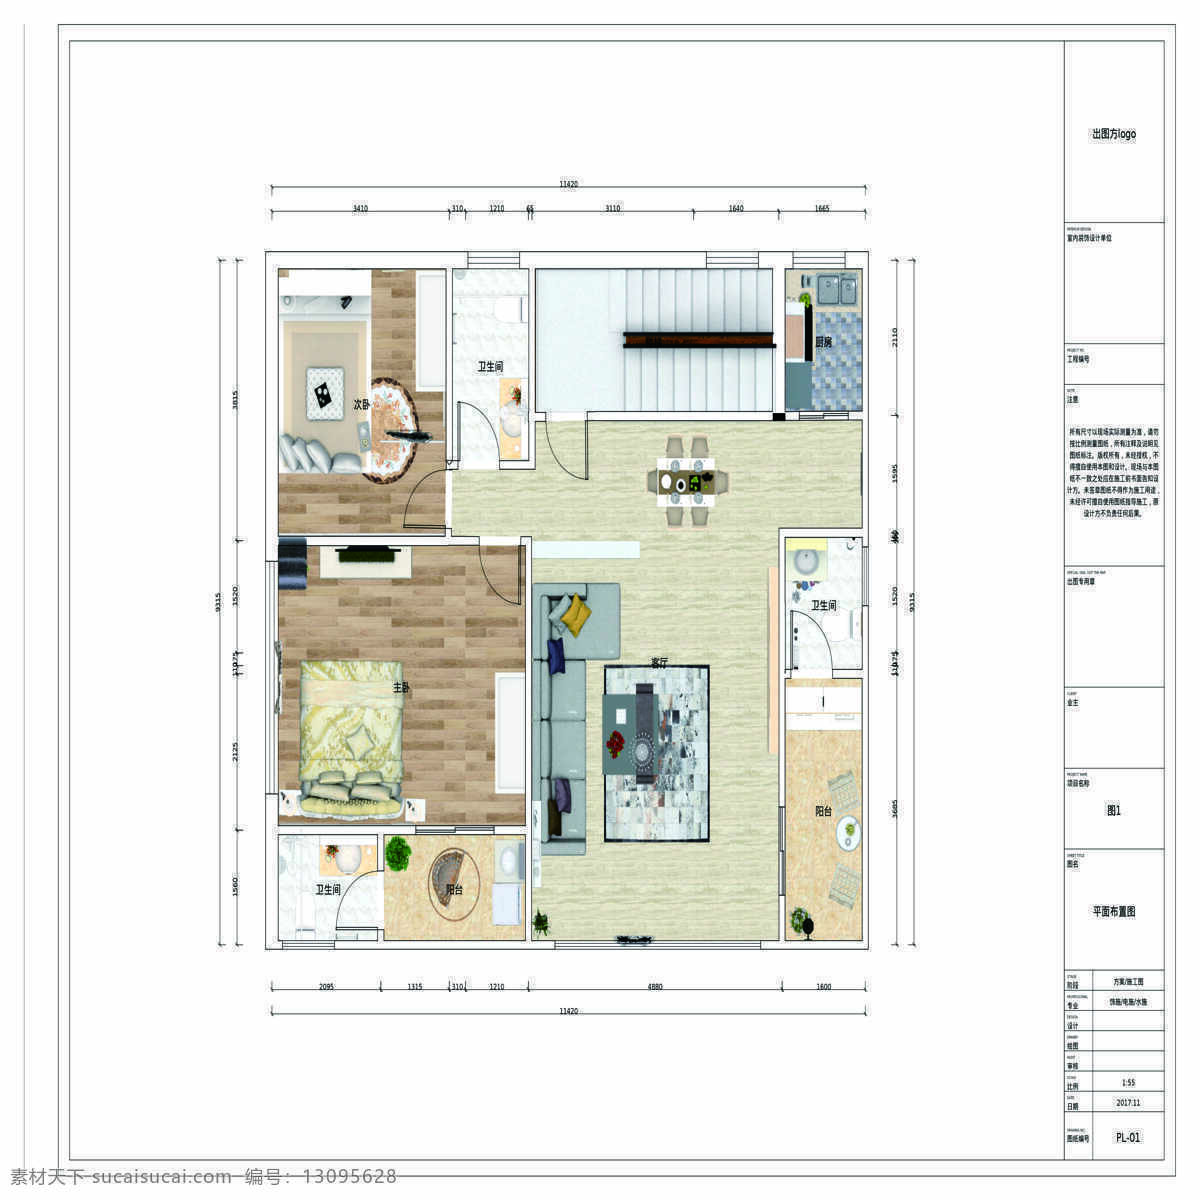 室内设计 图纸 专业 方案 室内设计图 施工平面图 平面设计图 房屋设计 3d效果图